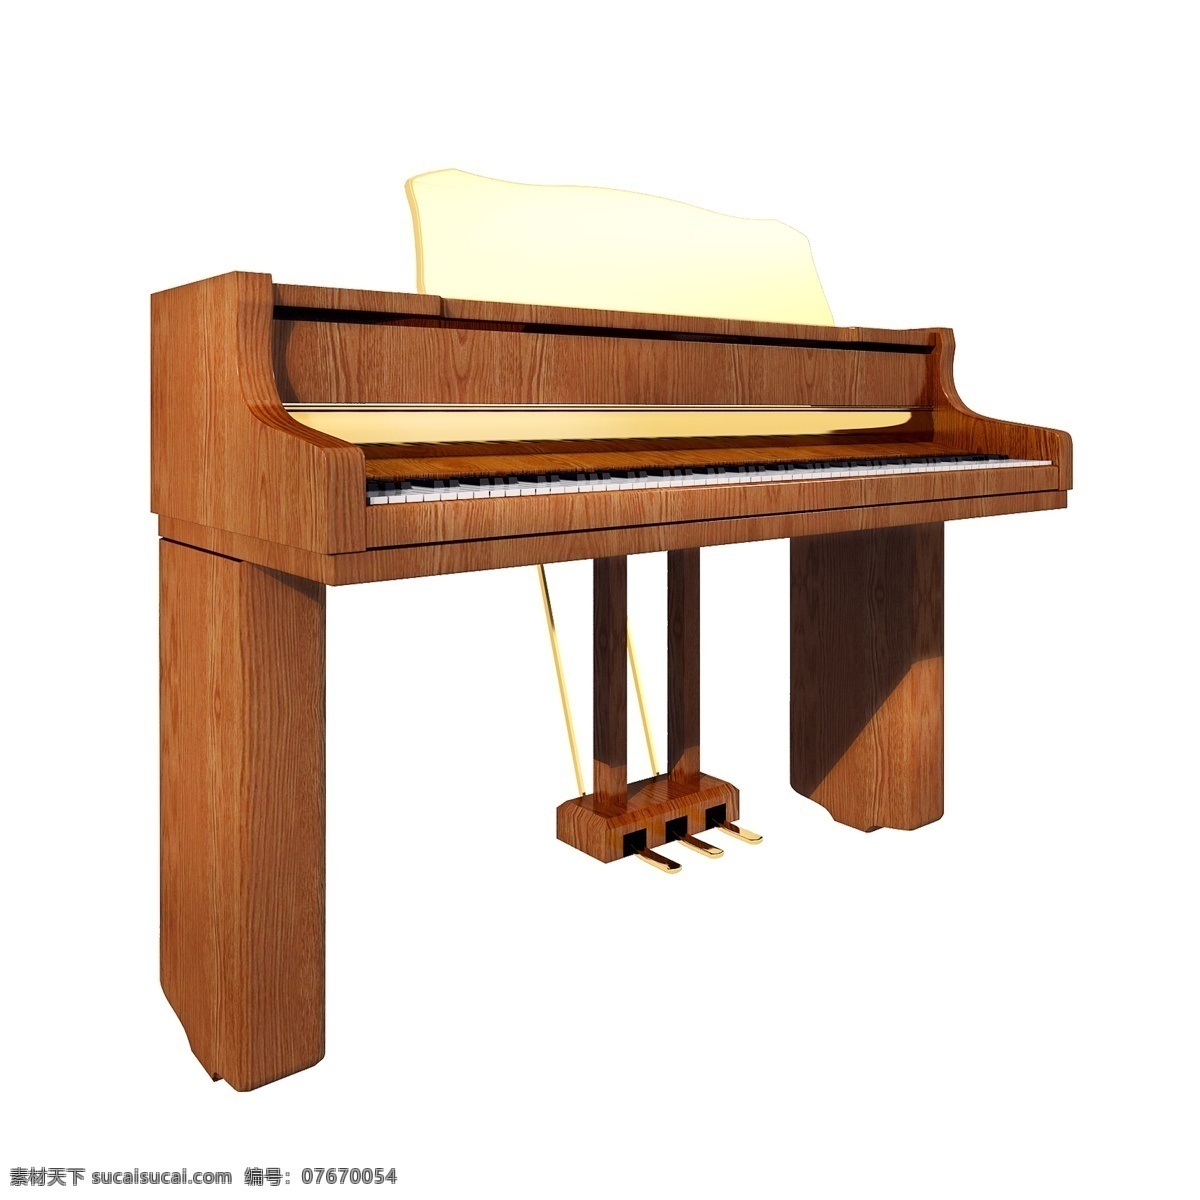 立体 古董 钢琴 图 质感 木质 古董钢琴 精致 镀金 仿真 3d 创意 套图 png图